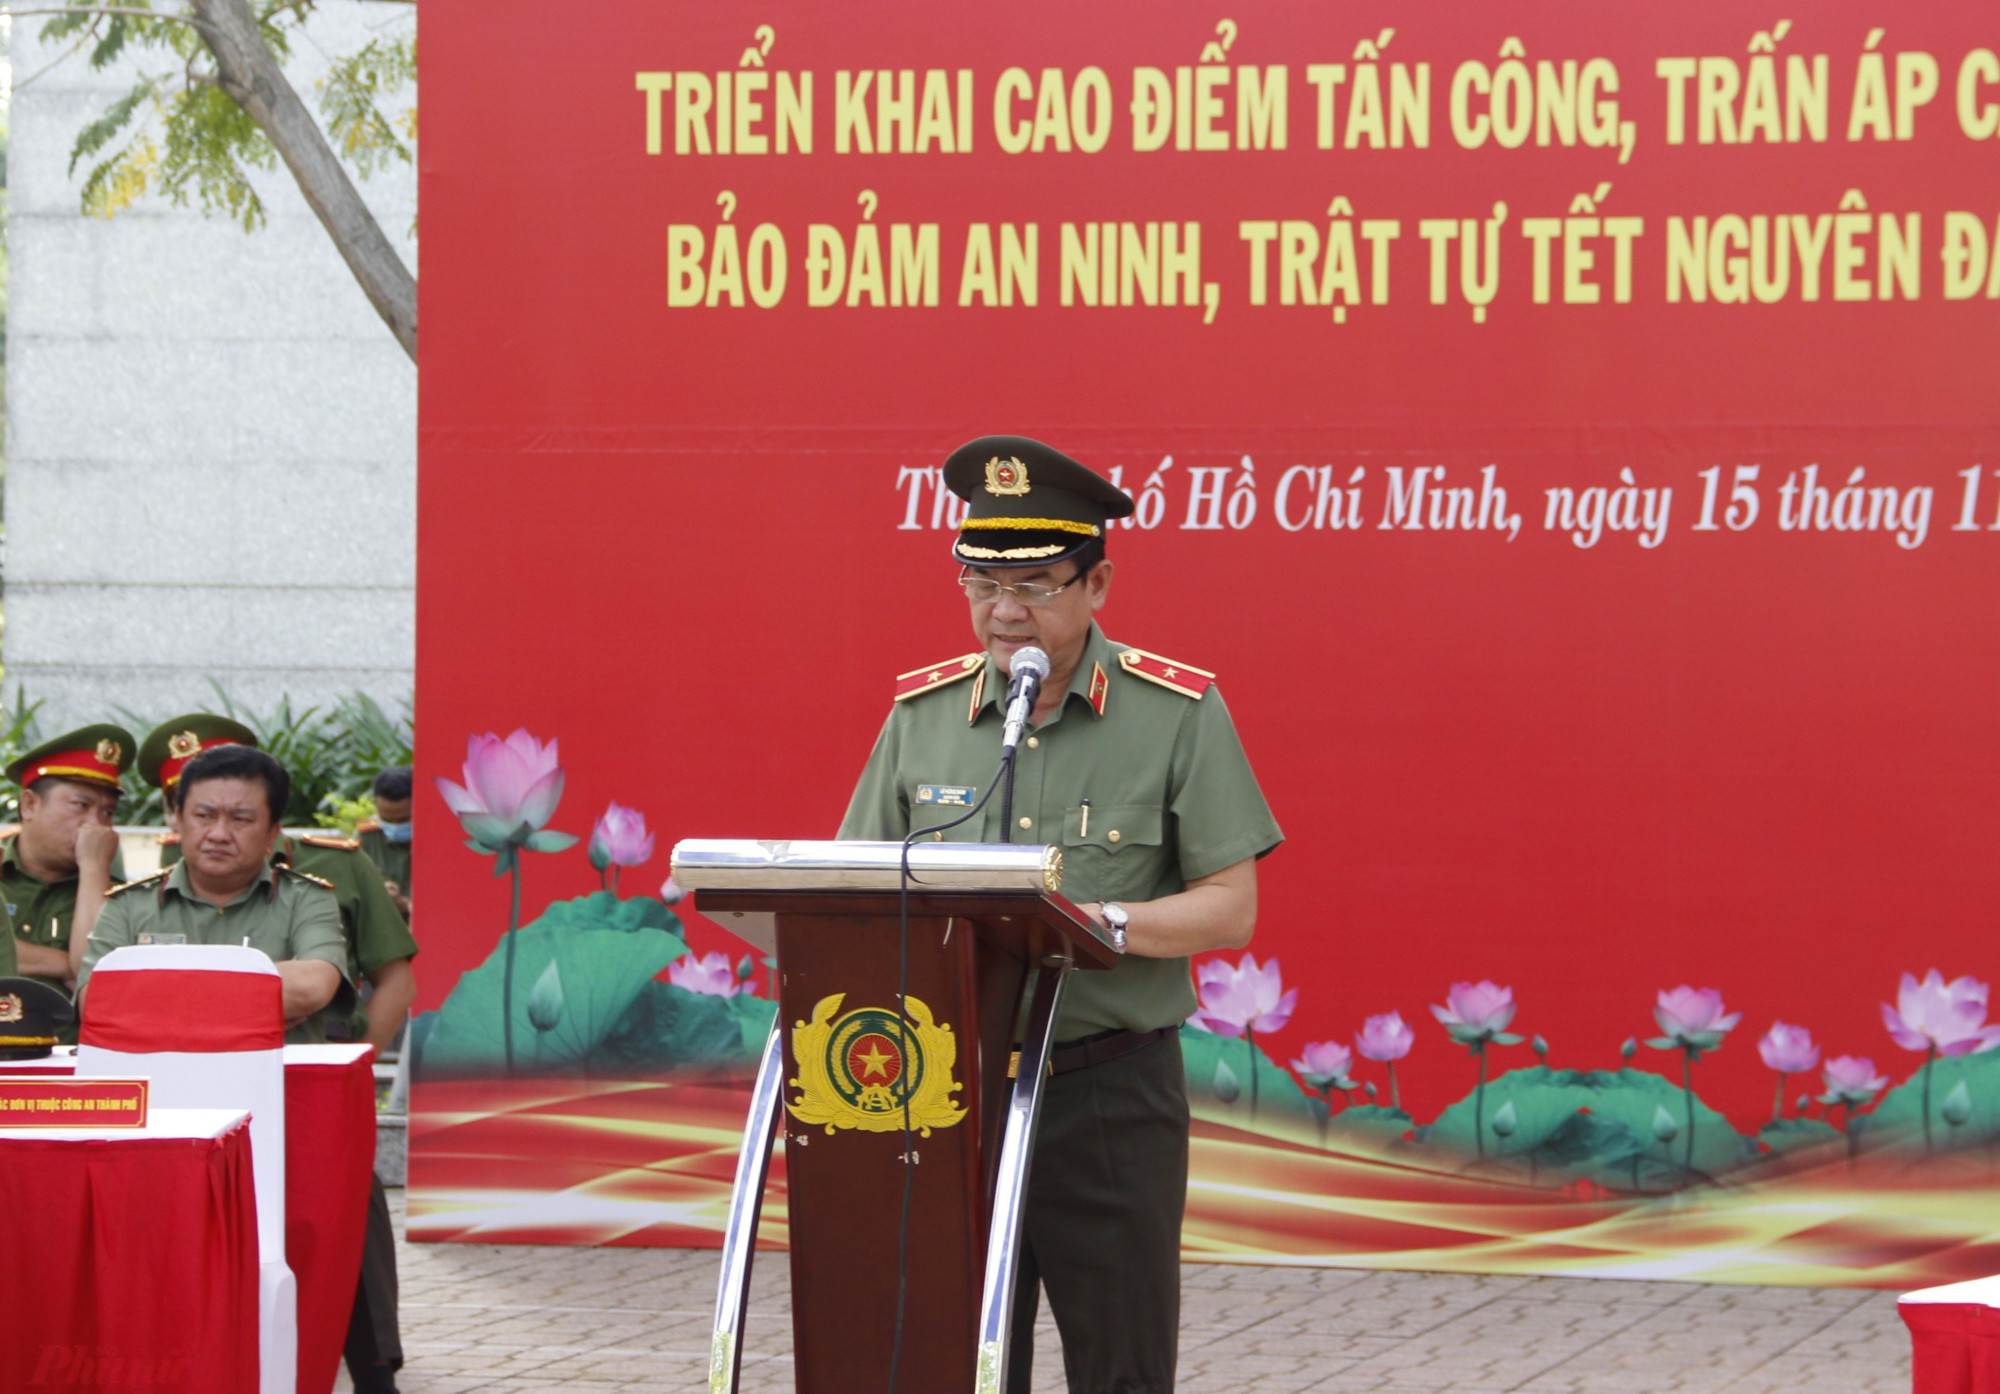 Thiếu tướng Lê Hồng Nam chia sẻ về tình hình an ninh trật tự ở TPHCM trong 11 tháng đầu năm 2022.